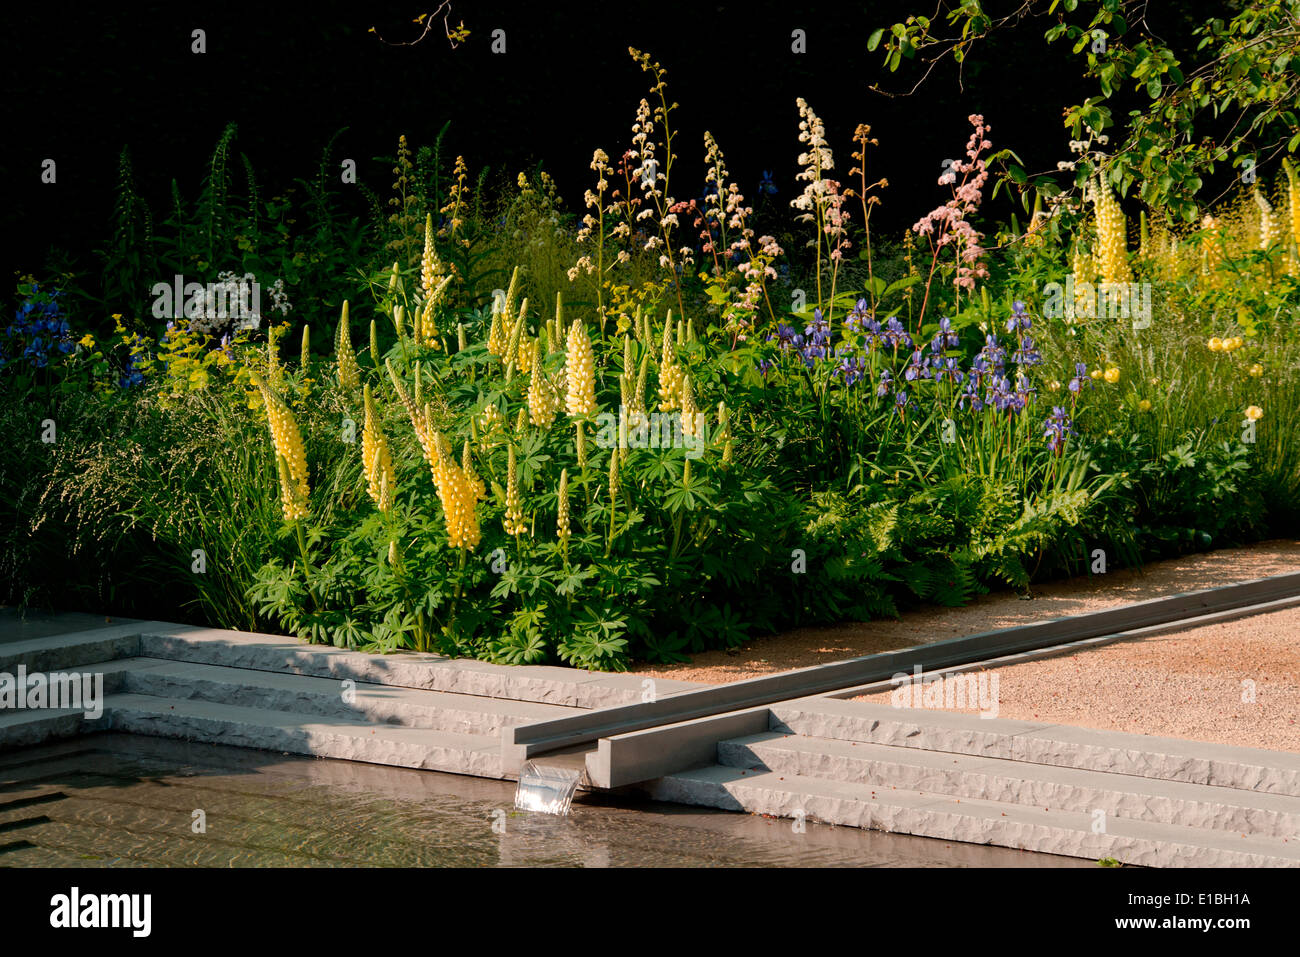 Il giardino Laurent-Perrier, miglior spettacolo giardino alla RHS Chelsea Flower Show 2014, progettato da Luciano Giubbilei Foto Stock